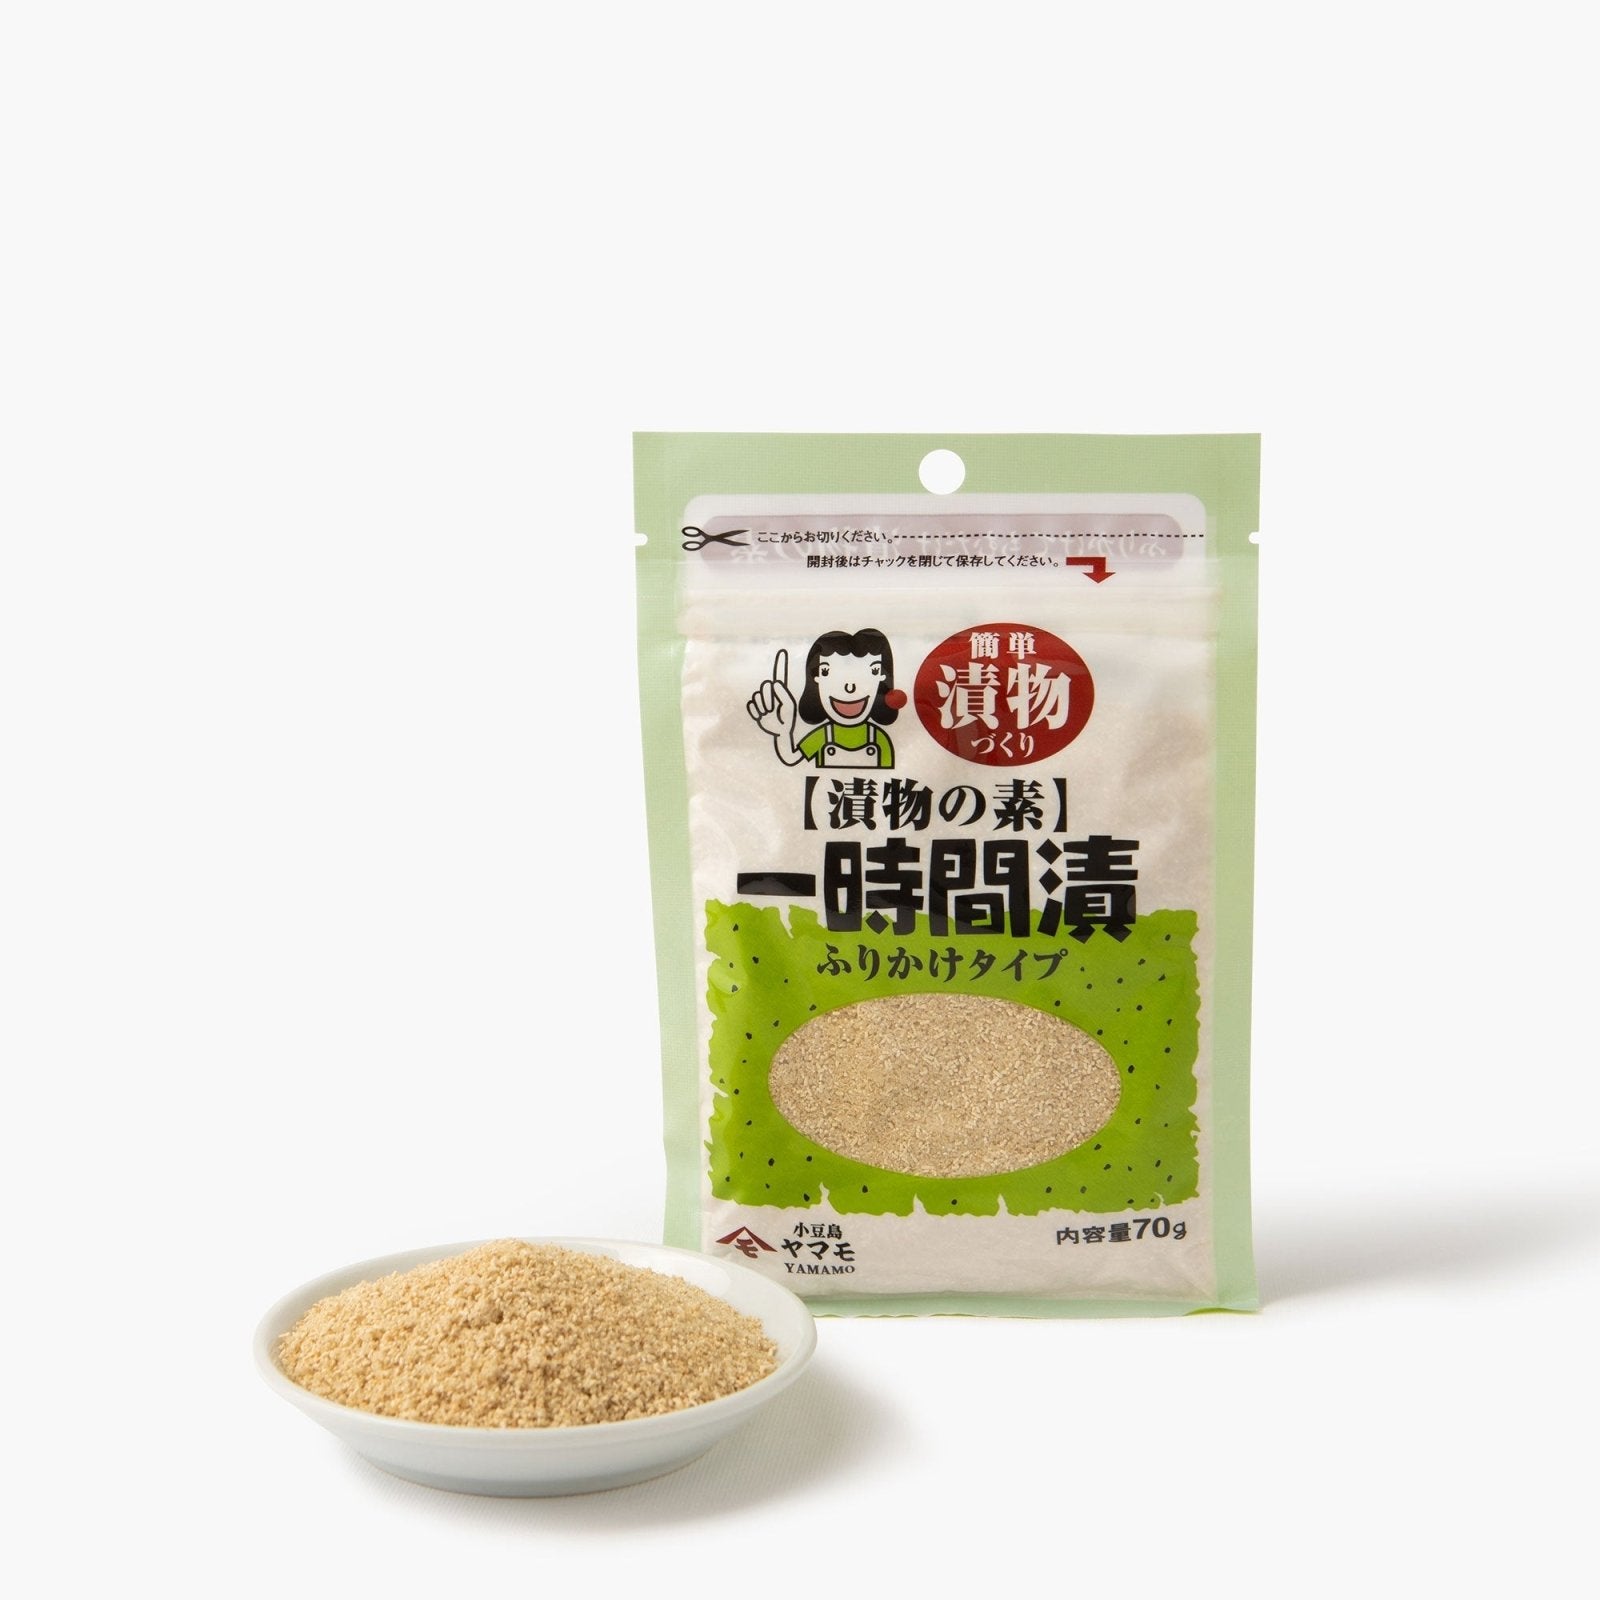 Poudre de préparation pour pickles - Takara Foods Corporation -iRASSHAi